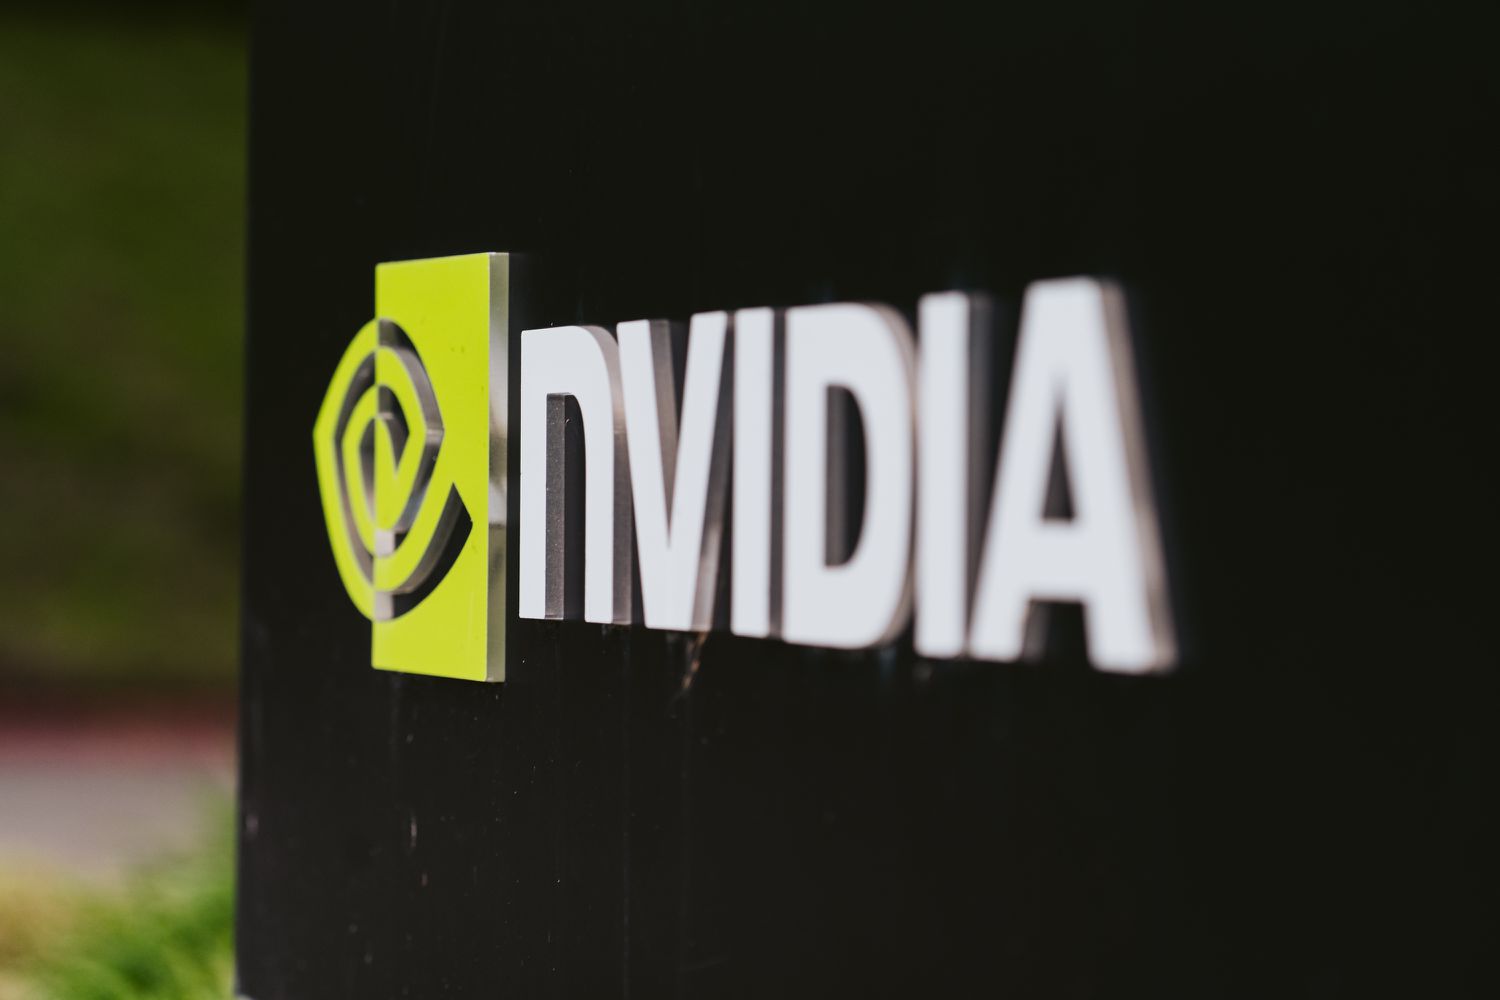 Nvidia bị cáo buộc sử dụng trái phép dữ liệu sách đã đăng ký bản quyền để đào tạo AI NeMo